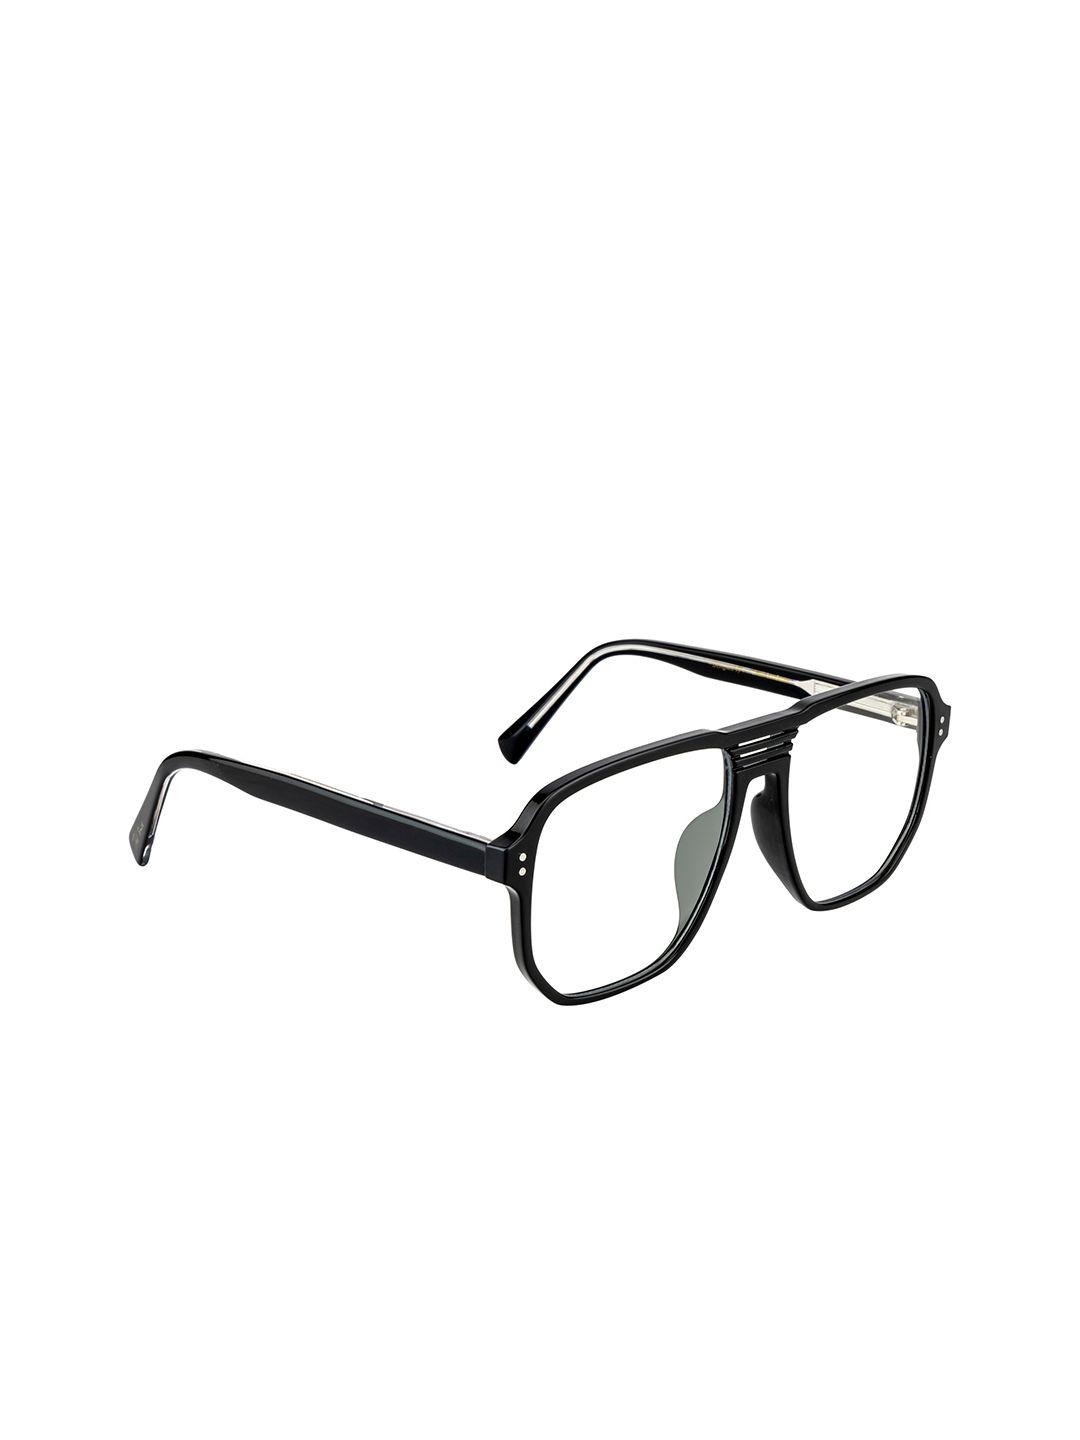 ted smith unisex black full rim square frames eyeglasses